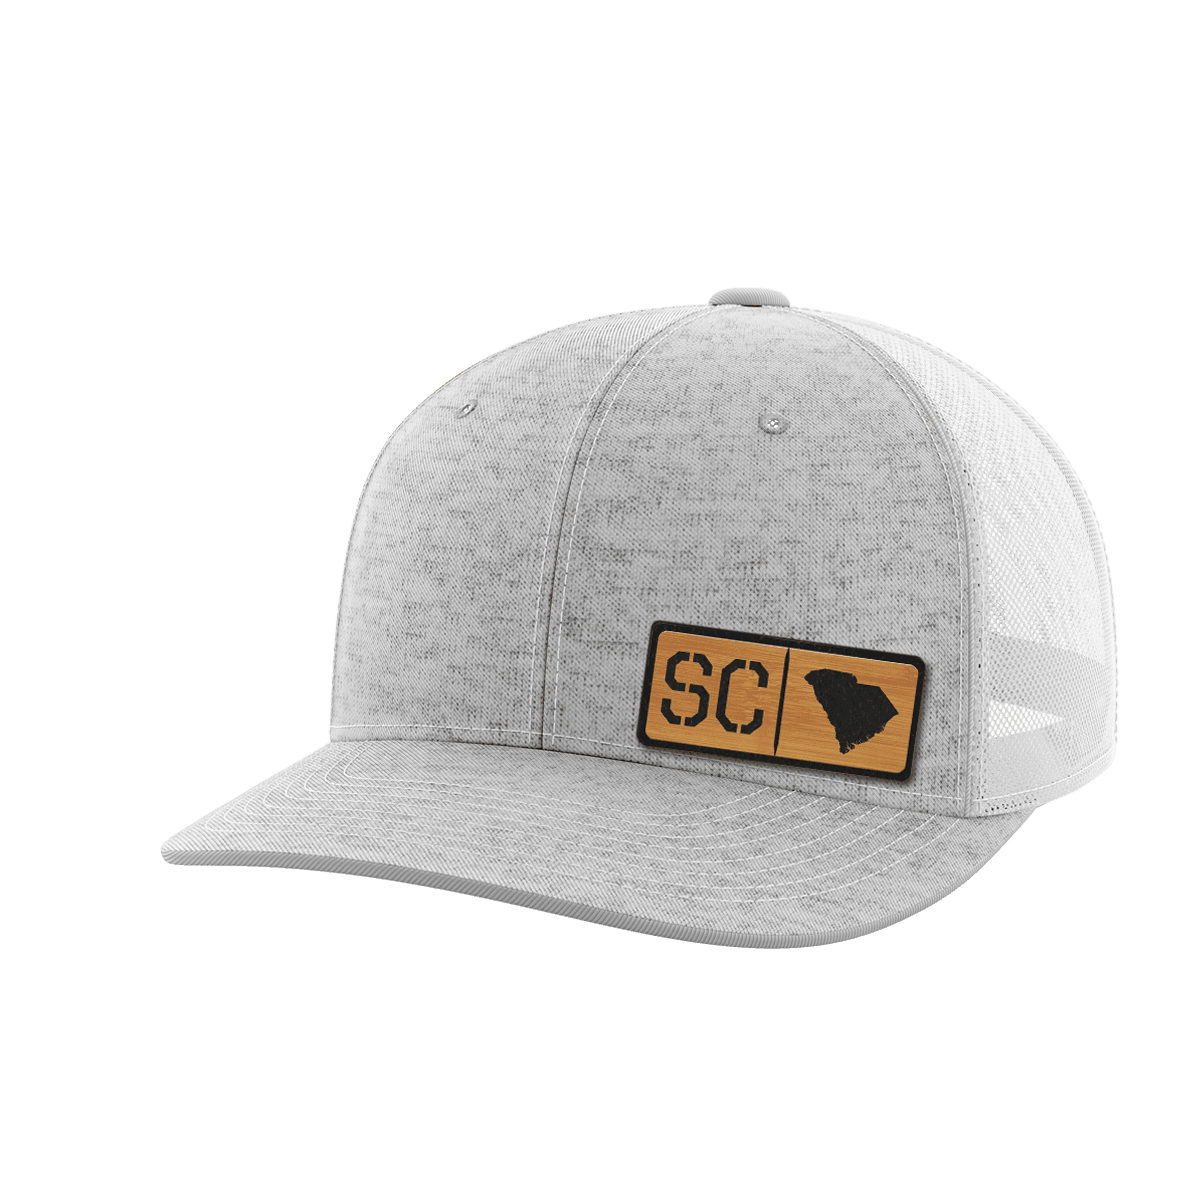 Thumbnail for South Carolina Homegrown Hats - Greater Half